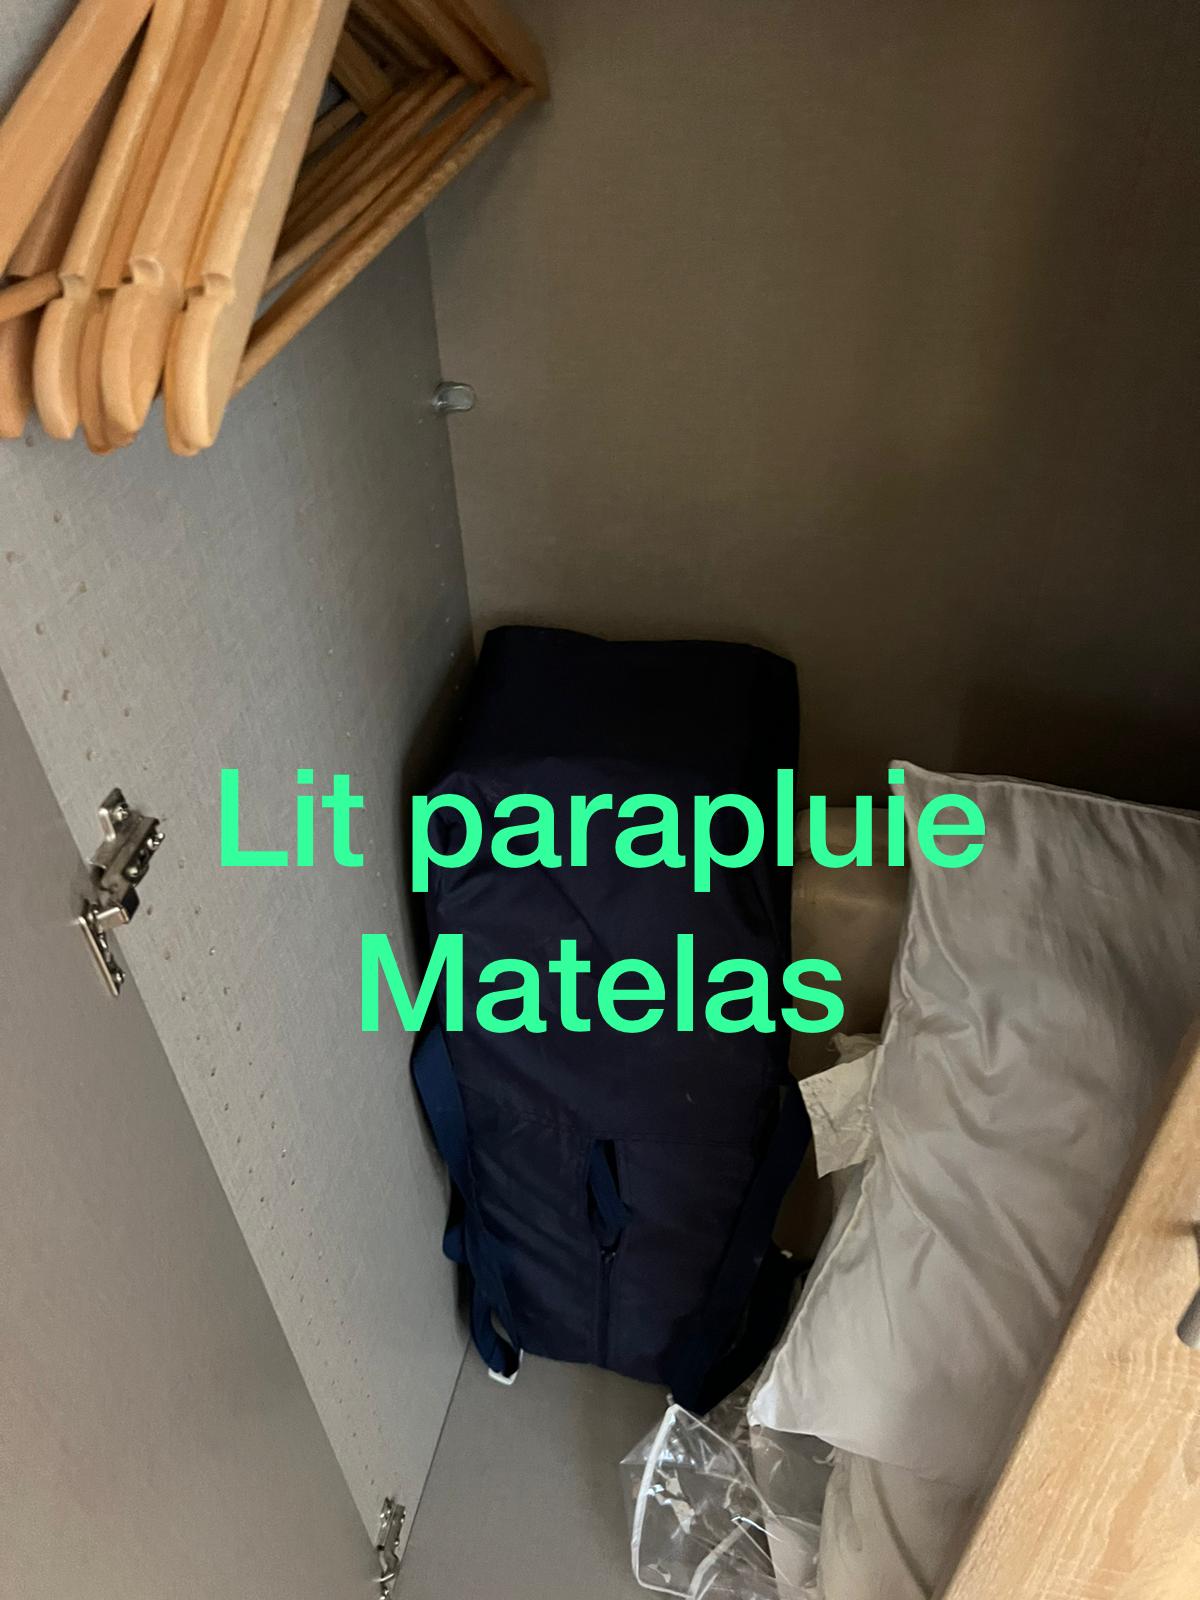 lit-parapluie-matelas-appartement-asana